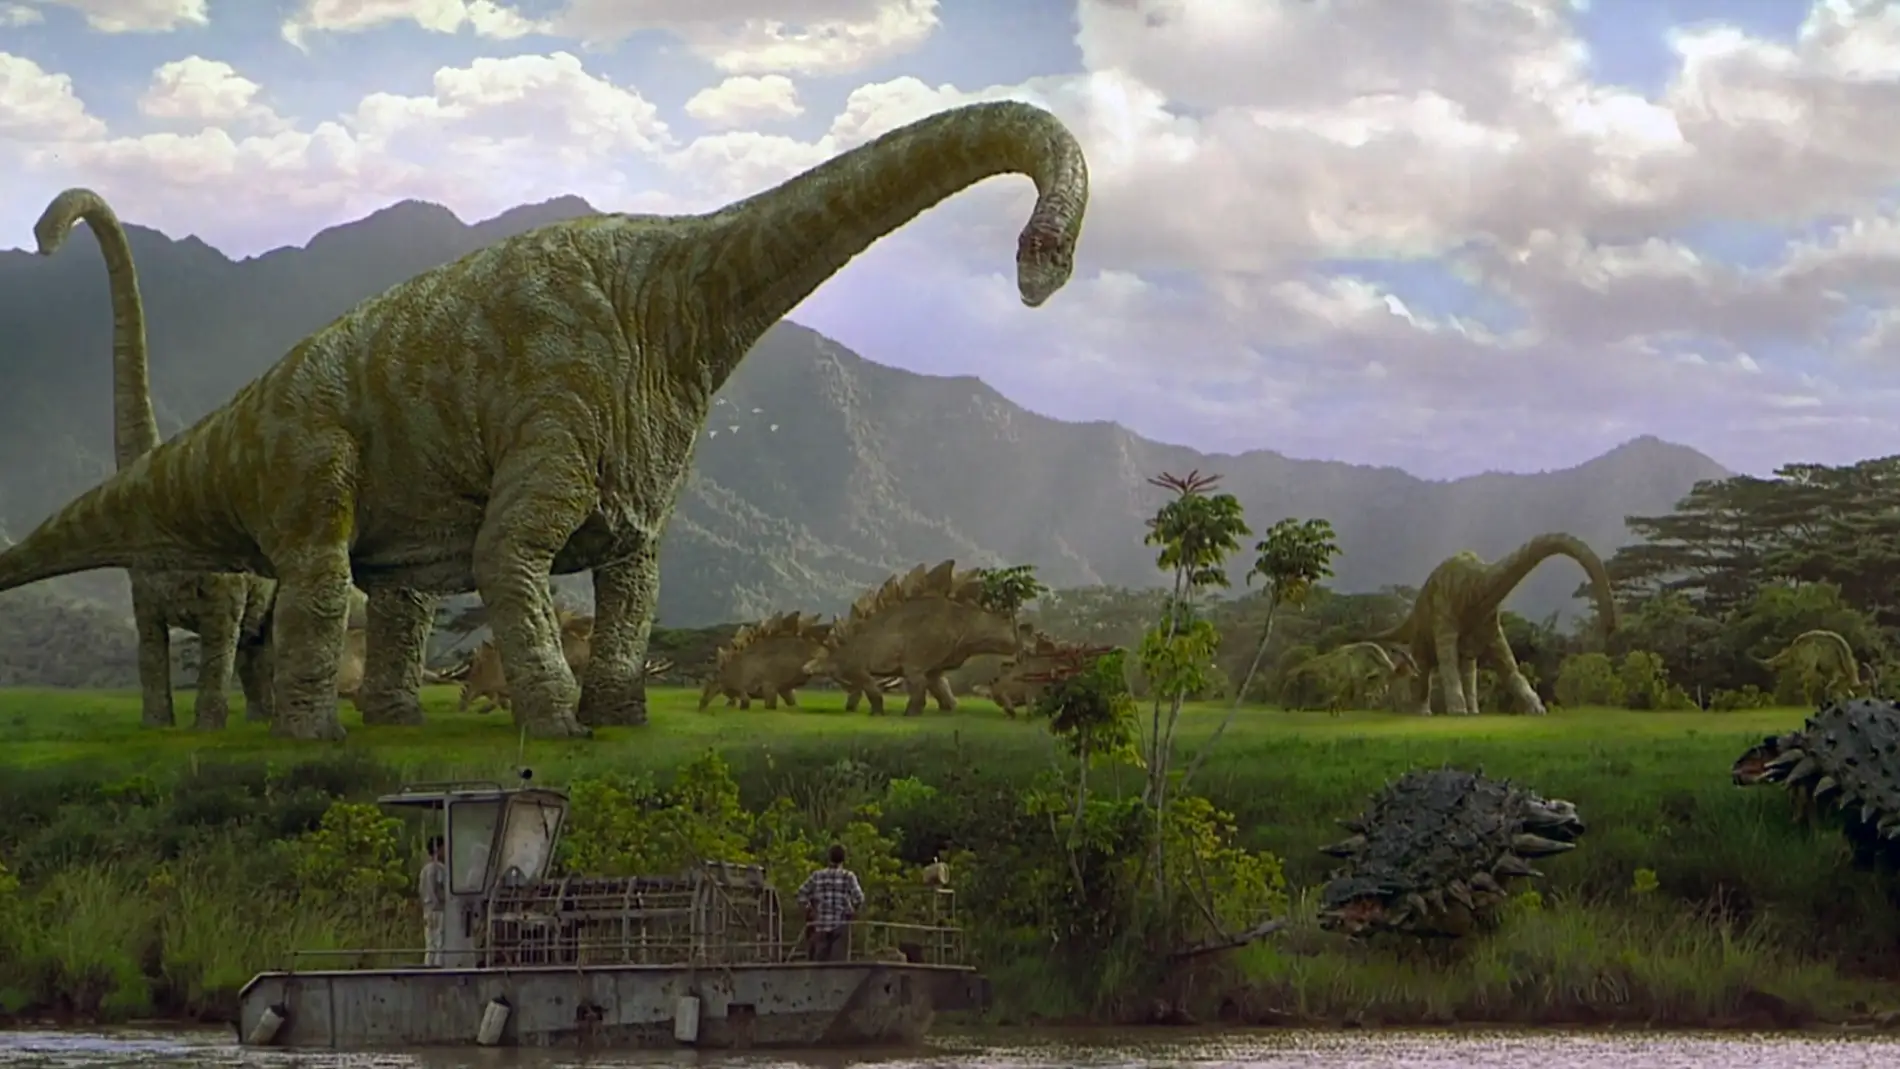 Brachiosaurus: Es uno de los animales más grandes que han caminado sobre la tierra, habiéndose convertido en uno de los dinosaurios más populares. Pesa de 35 a 60 toneladas y que puede llegar a medir de 13 a 16,5 metros de altura y 25 a 35 metros de largo. Esta presente en 'Jurassic Park I' y 'Jurassic Park III'. 